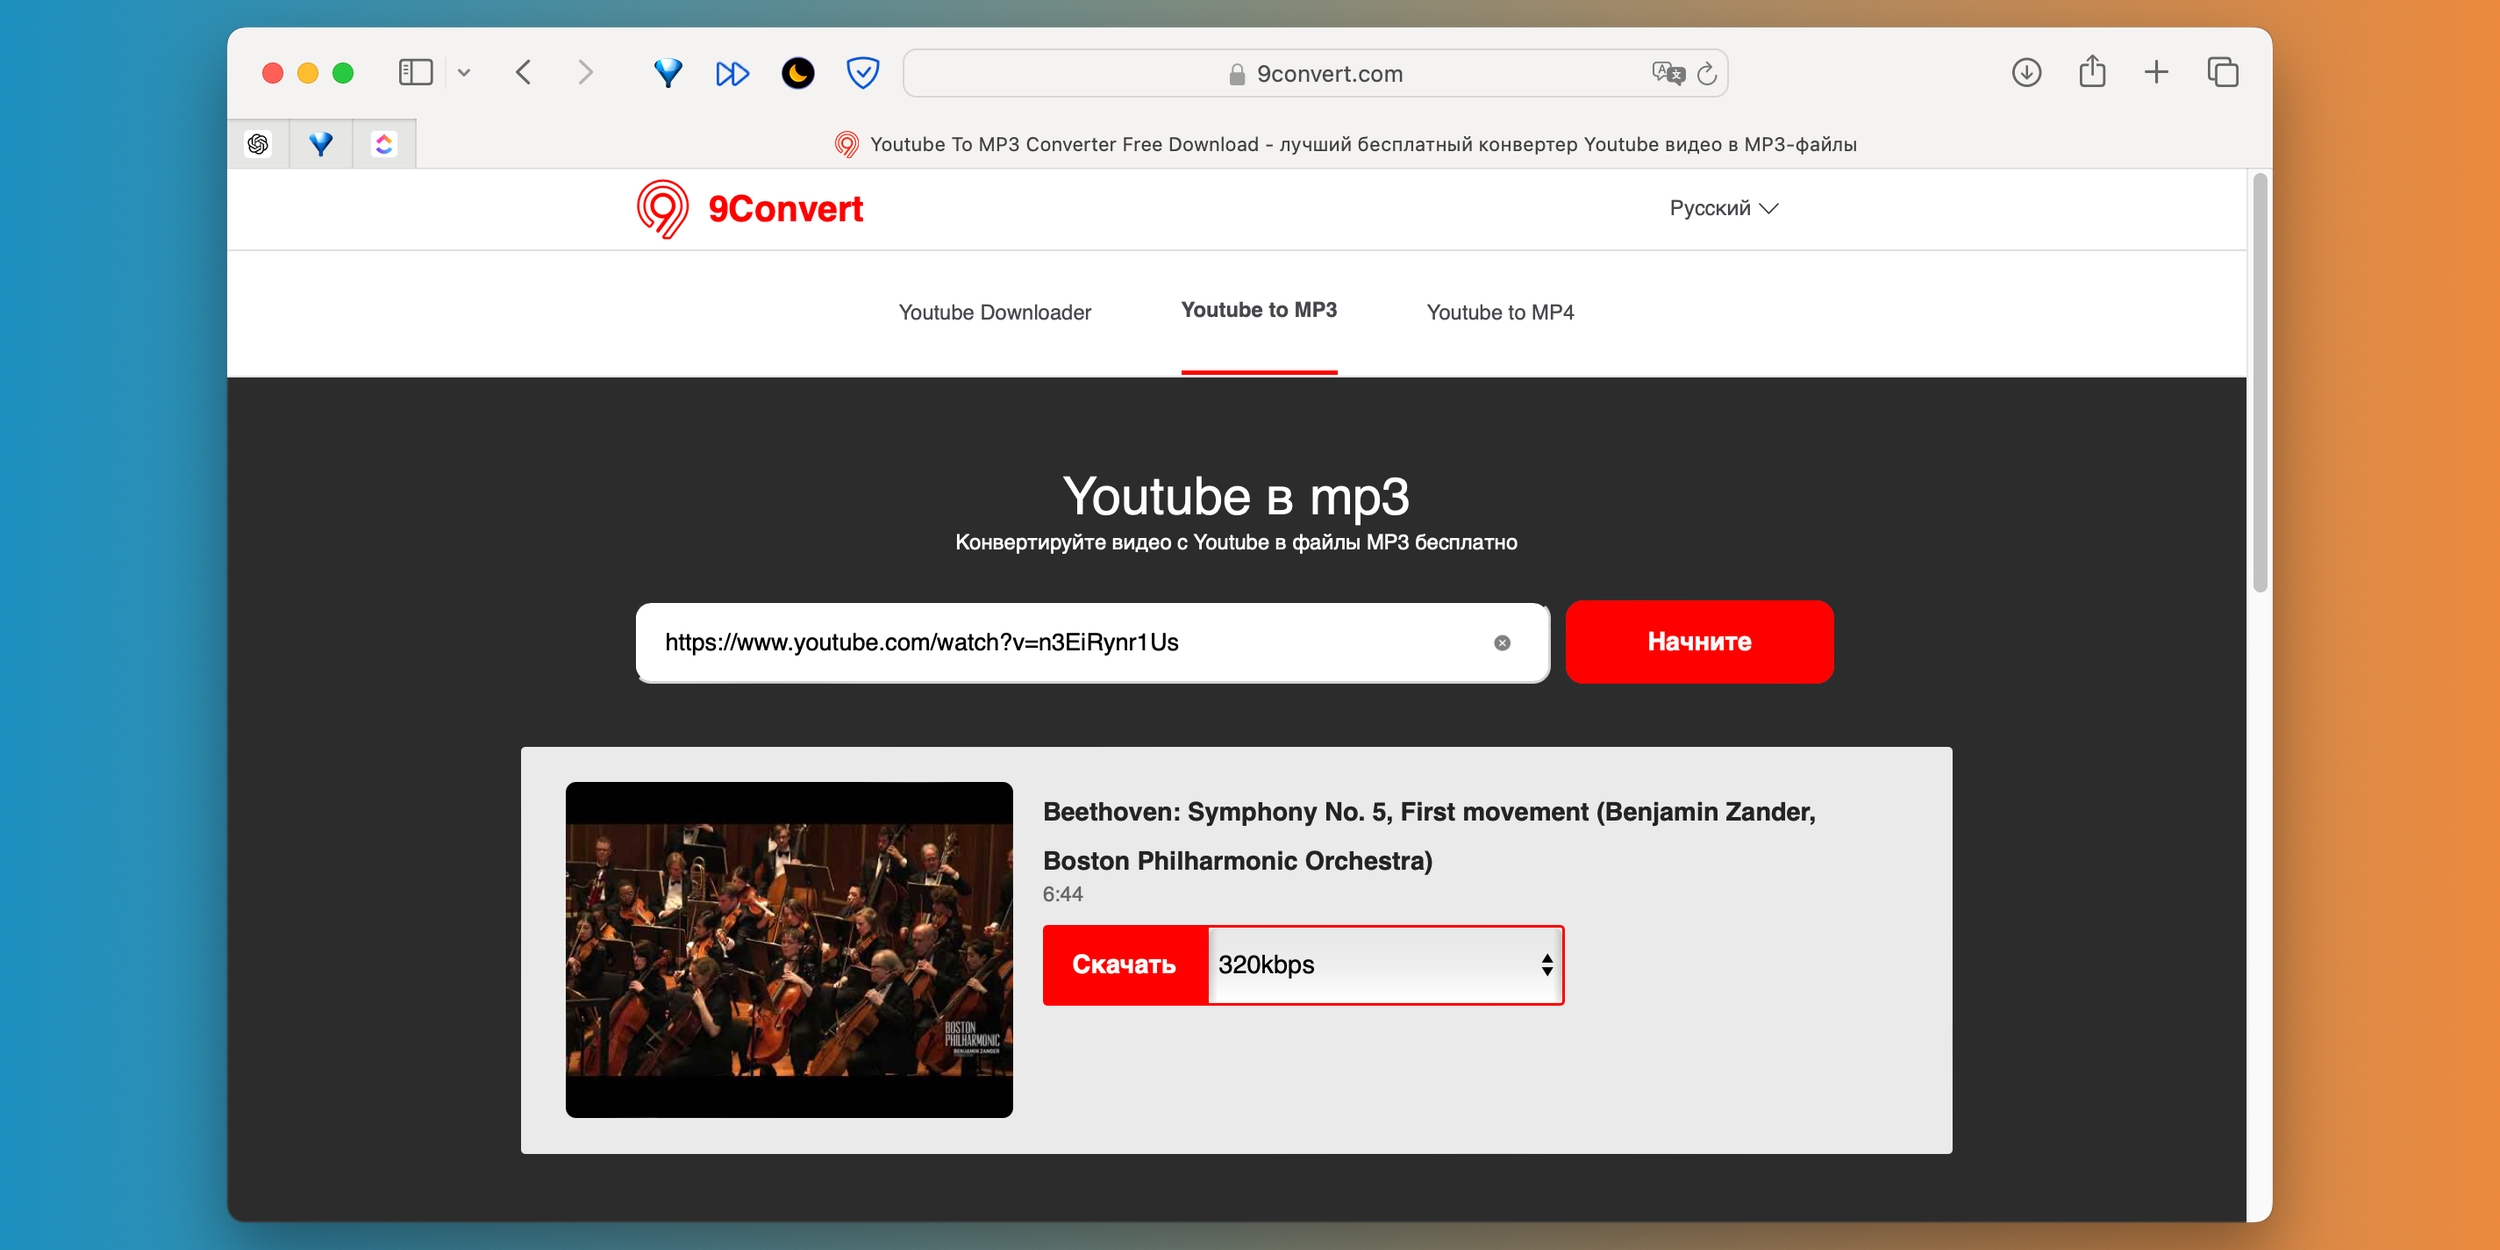 Как скачать музыку с YouTube с помощью онлайн-сервиса 9Convert